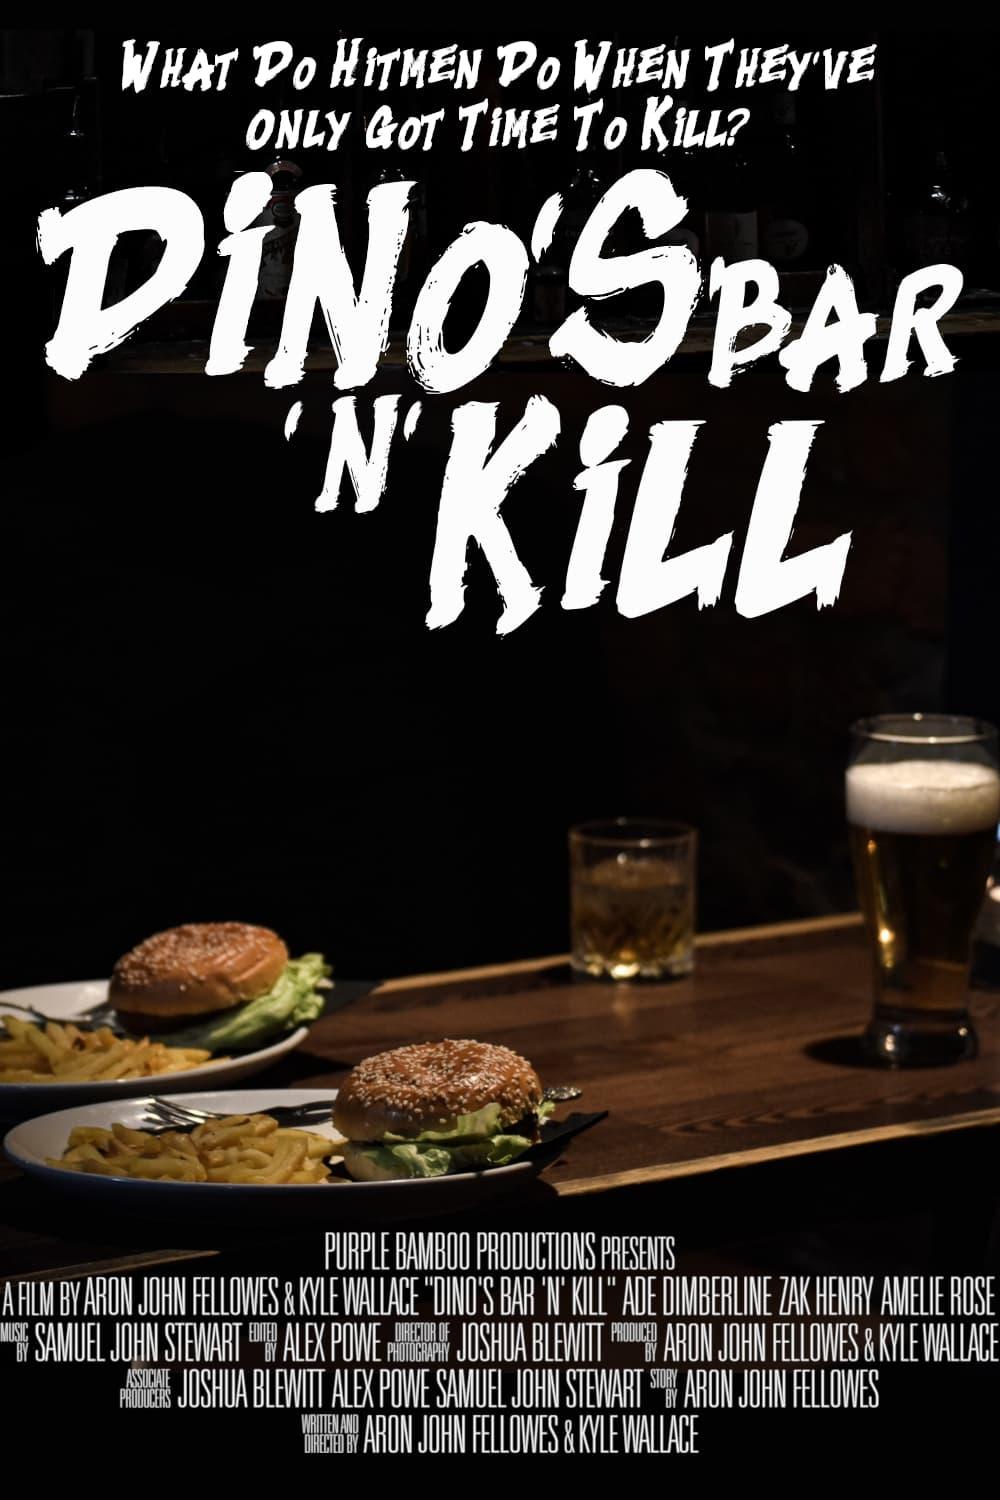 Dino's Bar 'n' Kill poster